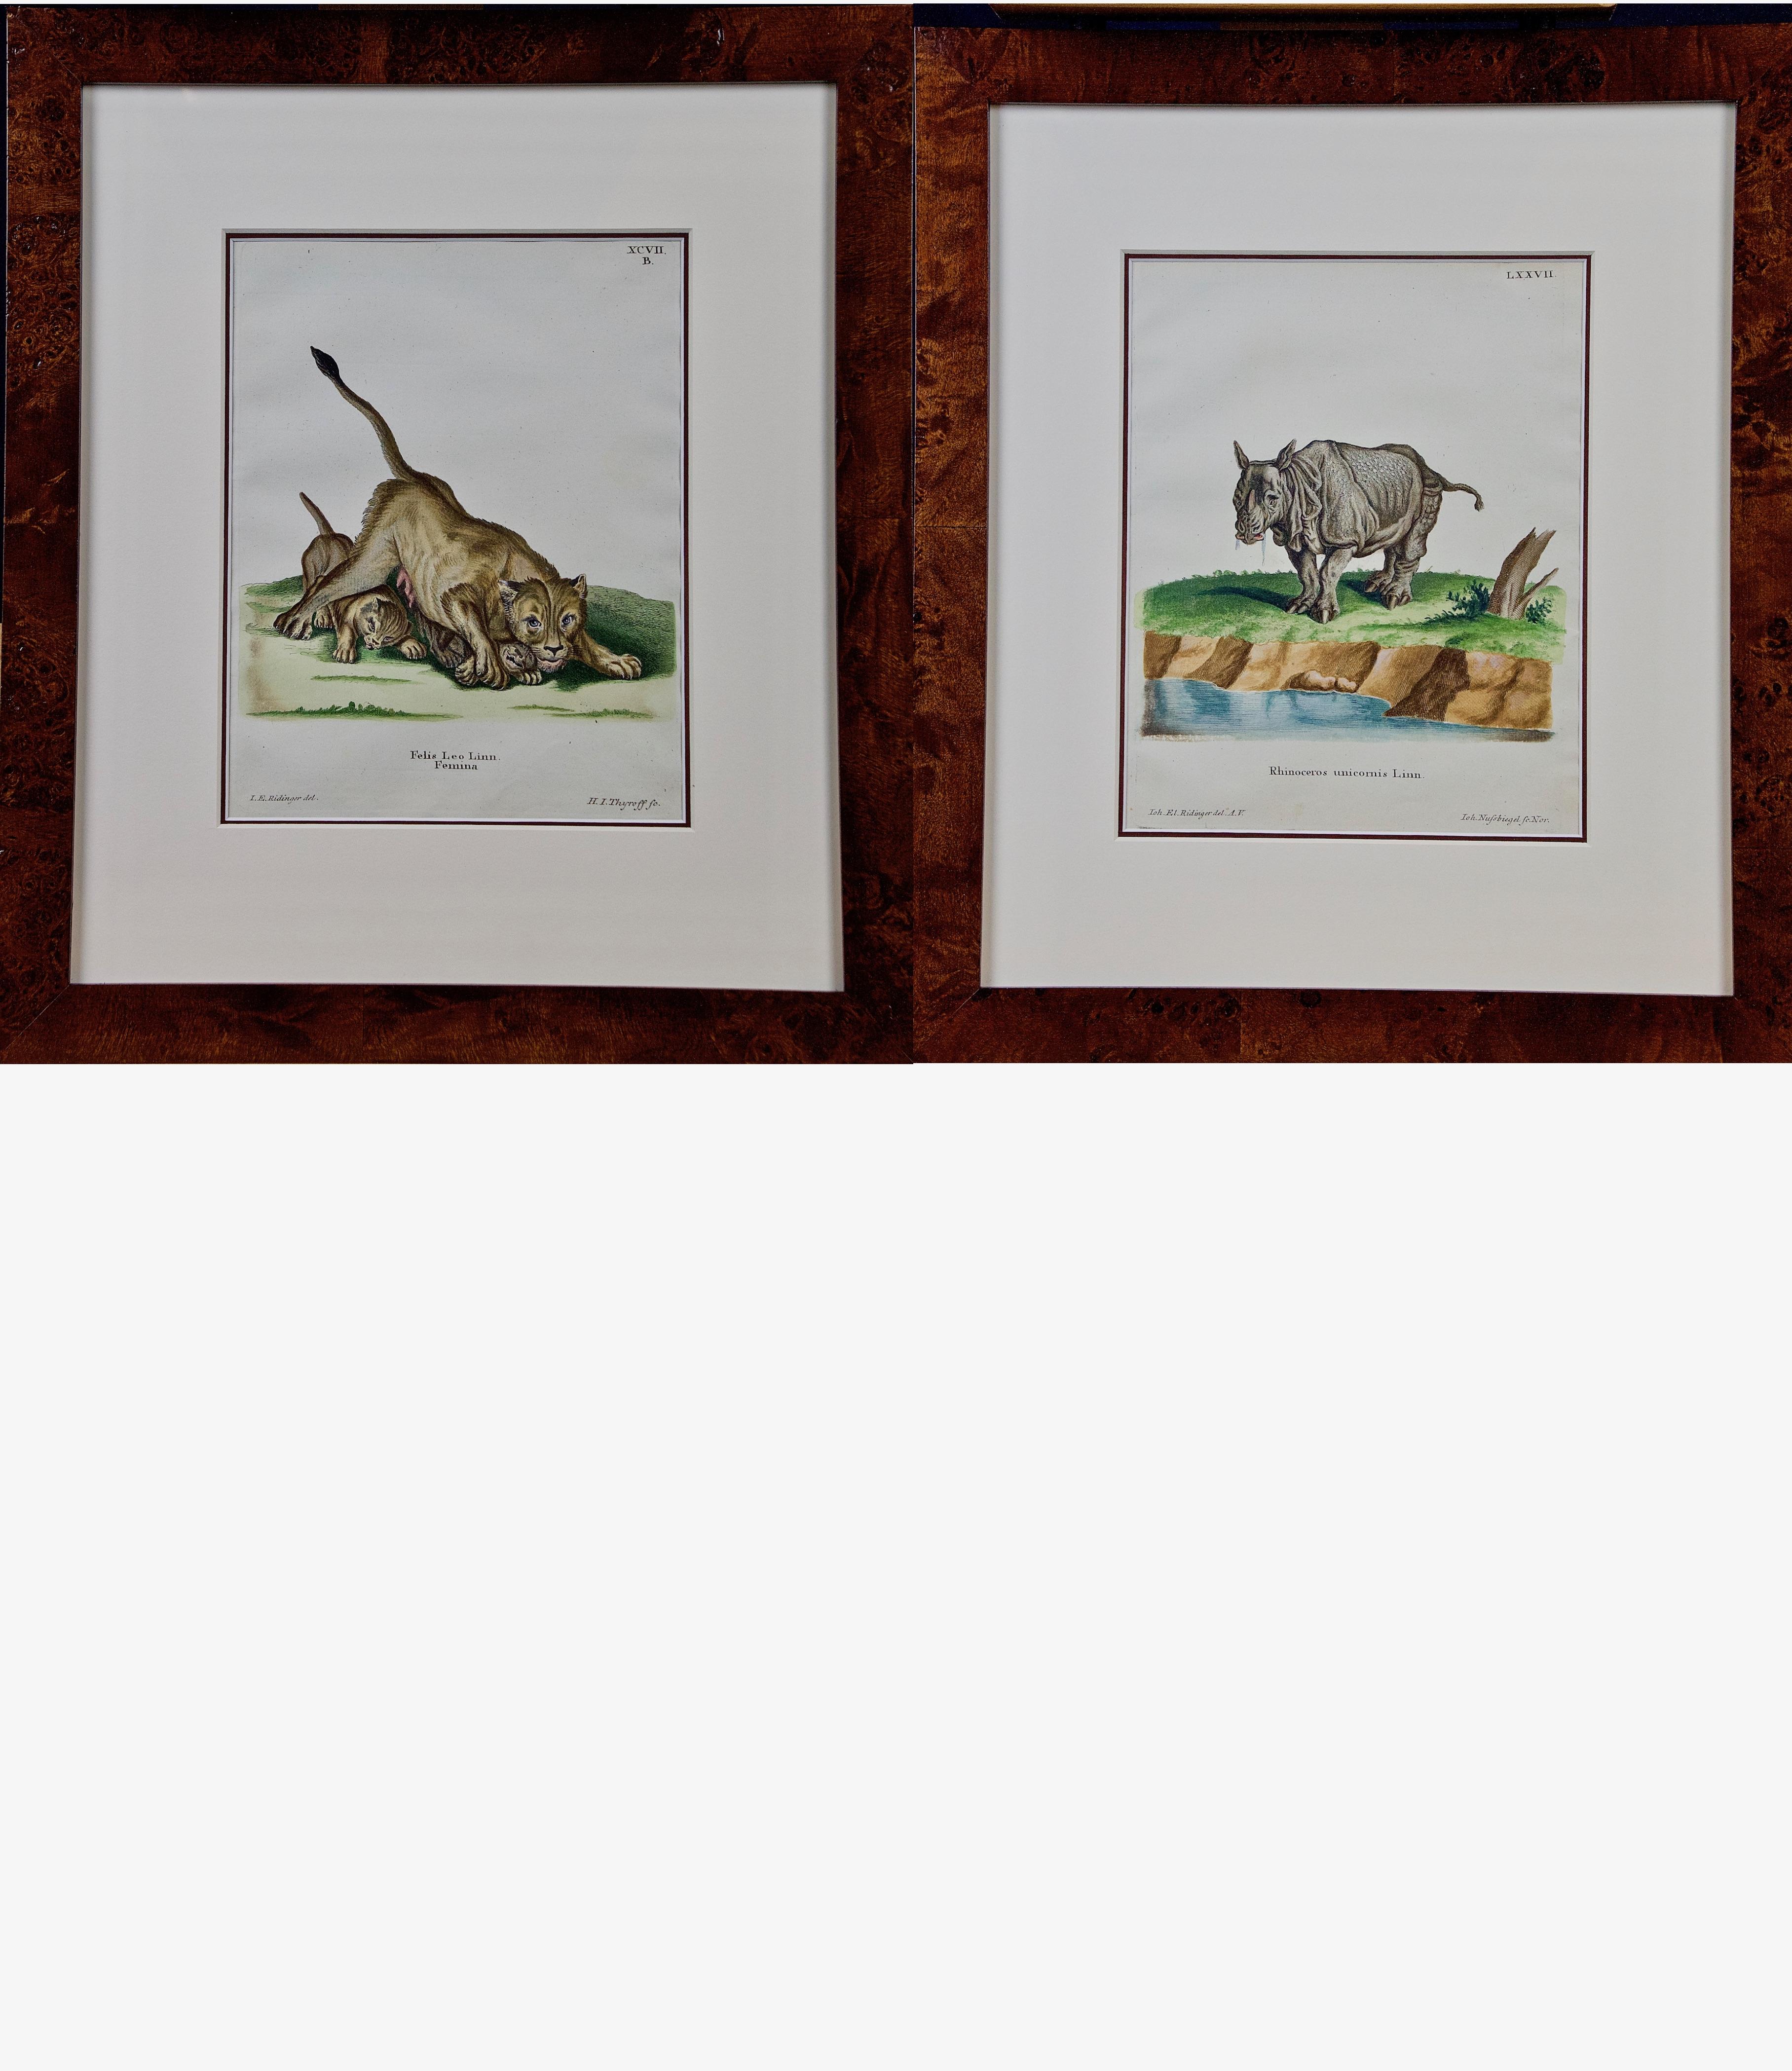 Johann Elias Ridinger Animal Print – Ein Paar handkolorierte Gravuren einer afrikanischen Löwe mit ihren Wächtern und einem Rhino